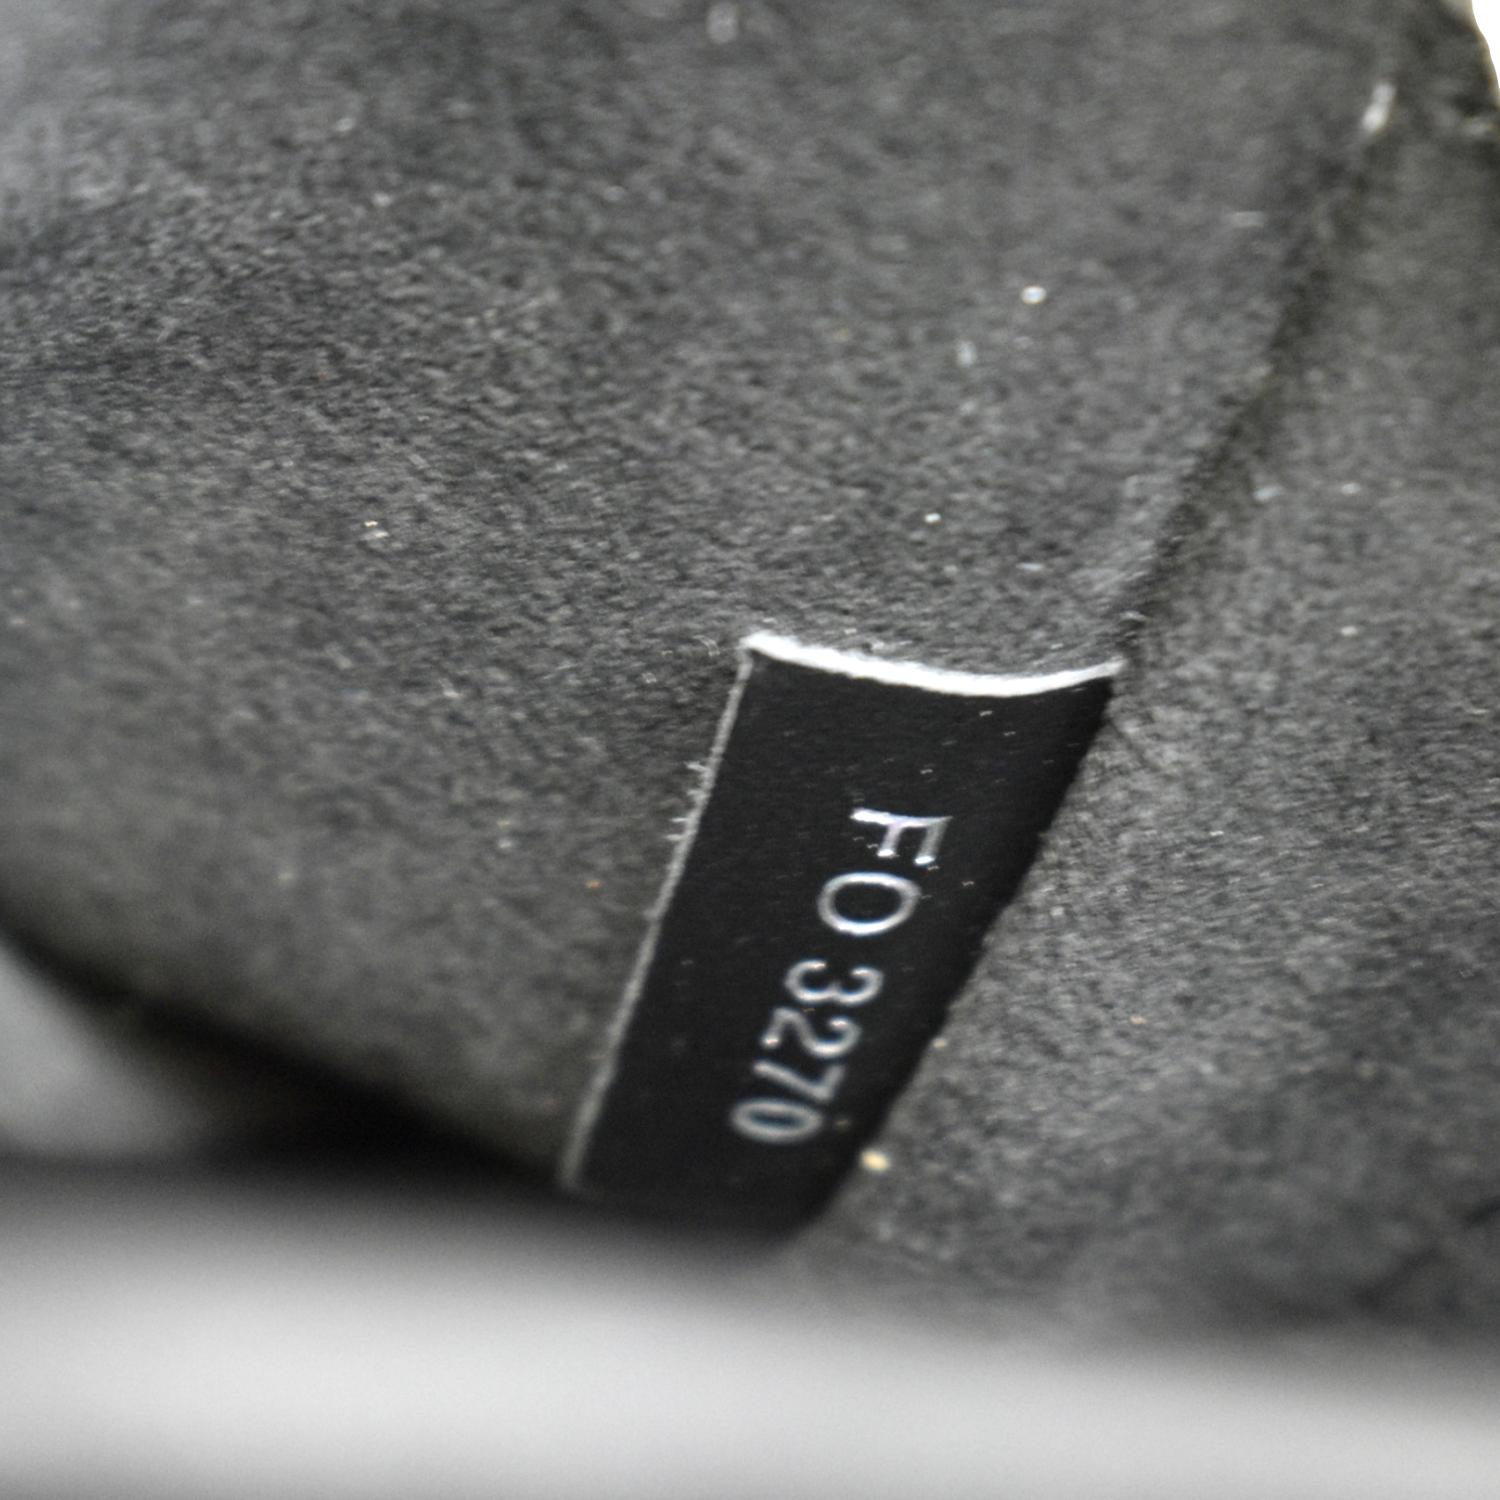 Louis Vuitton Monogram Neo Saint Cloud - ShopStyle Shoulder Bags